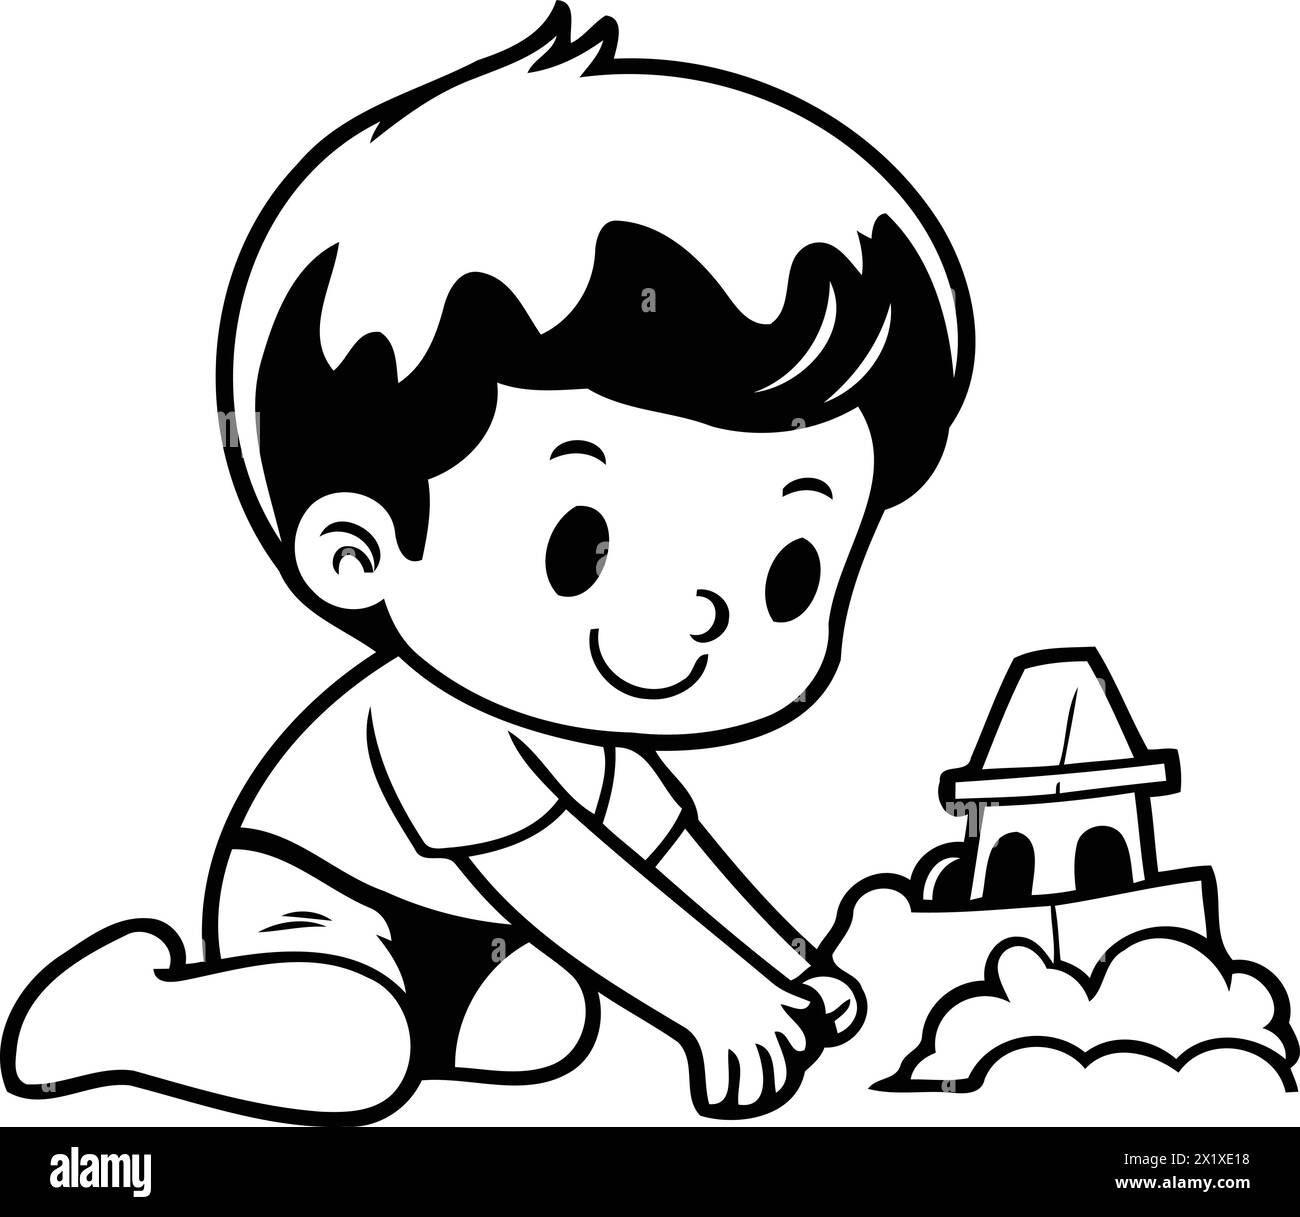 Mignon petit garçon jouant avec du sable et construisant un château. Illustration vectorielle. Illustration de Vecteur